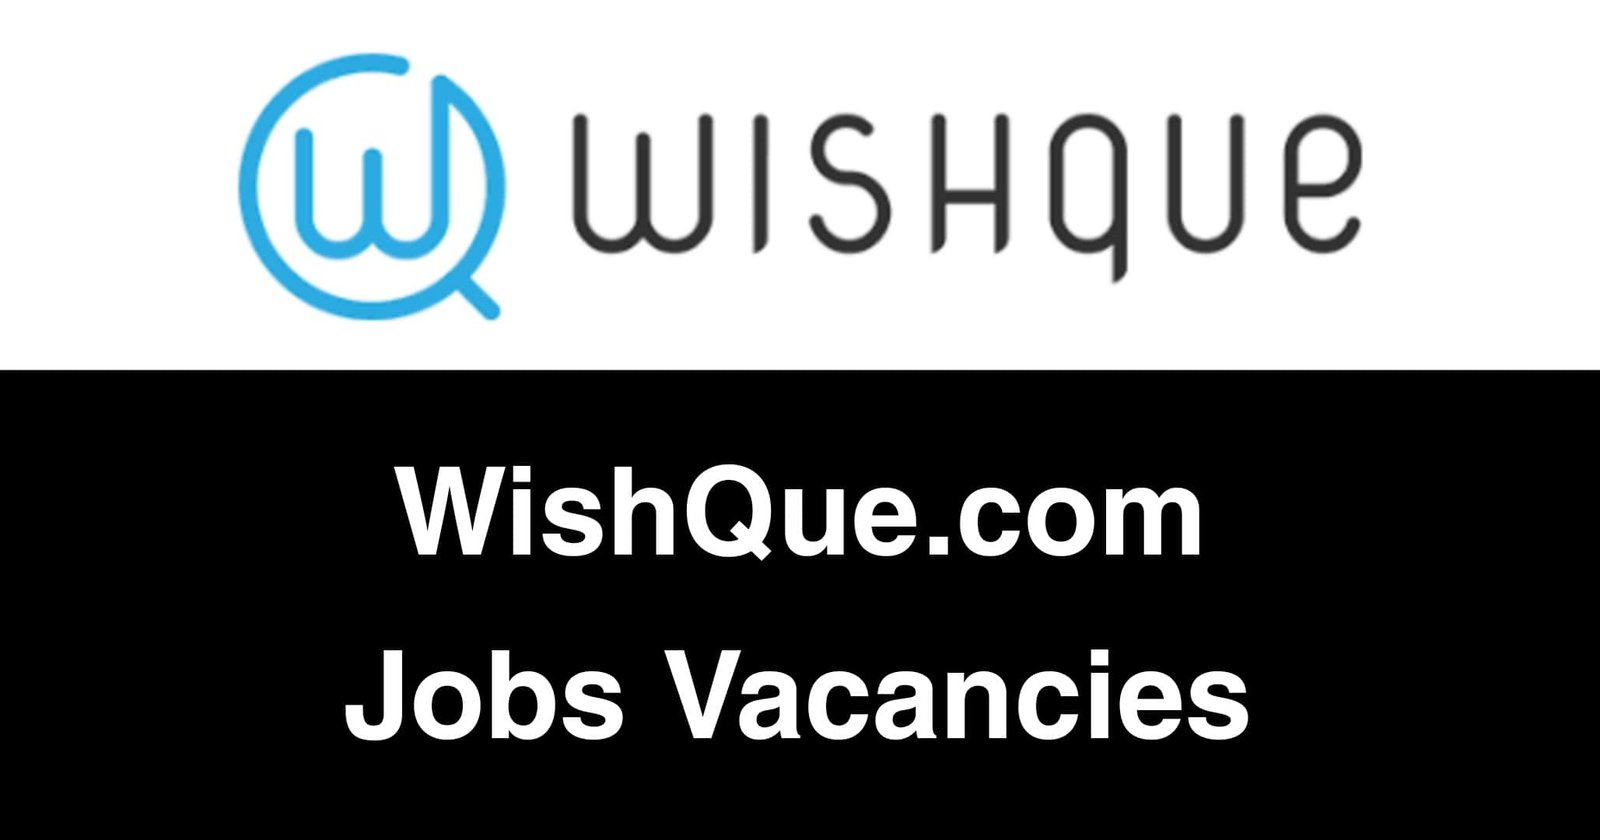 WishQue.com Jobs Vacancies